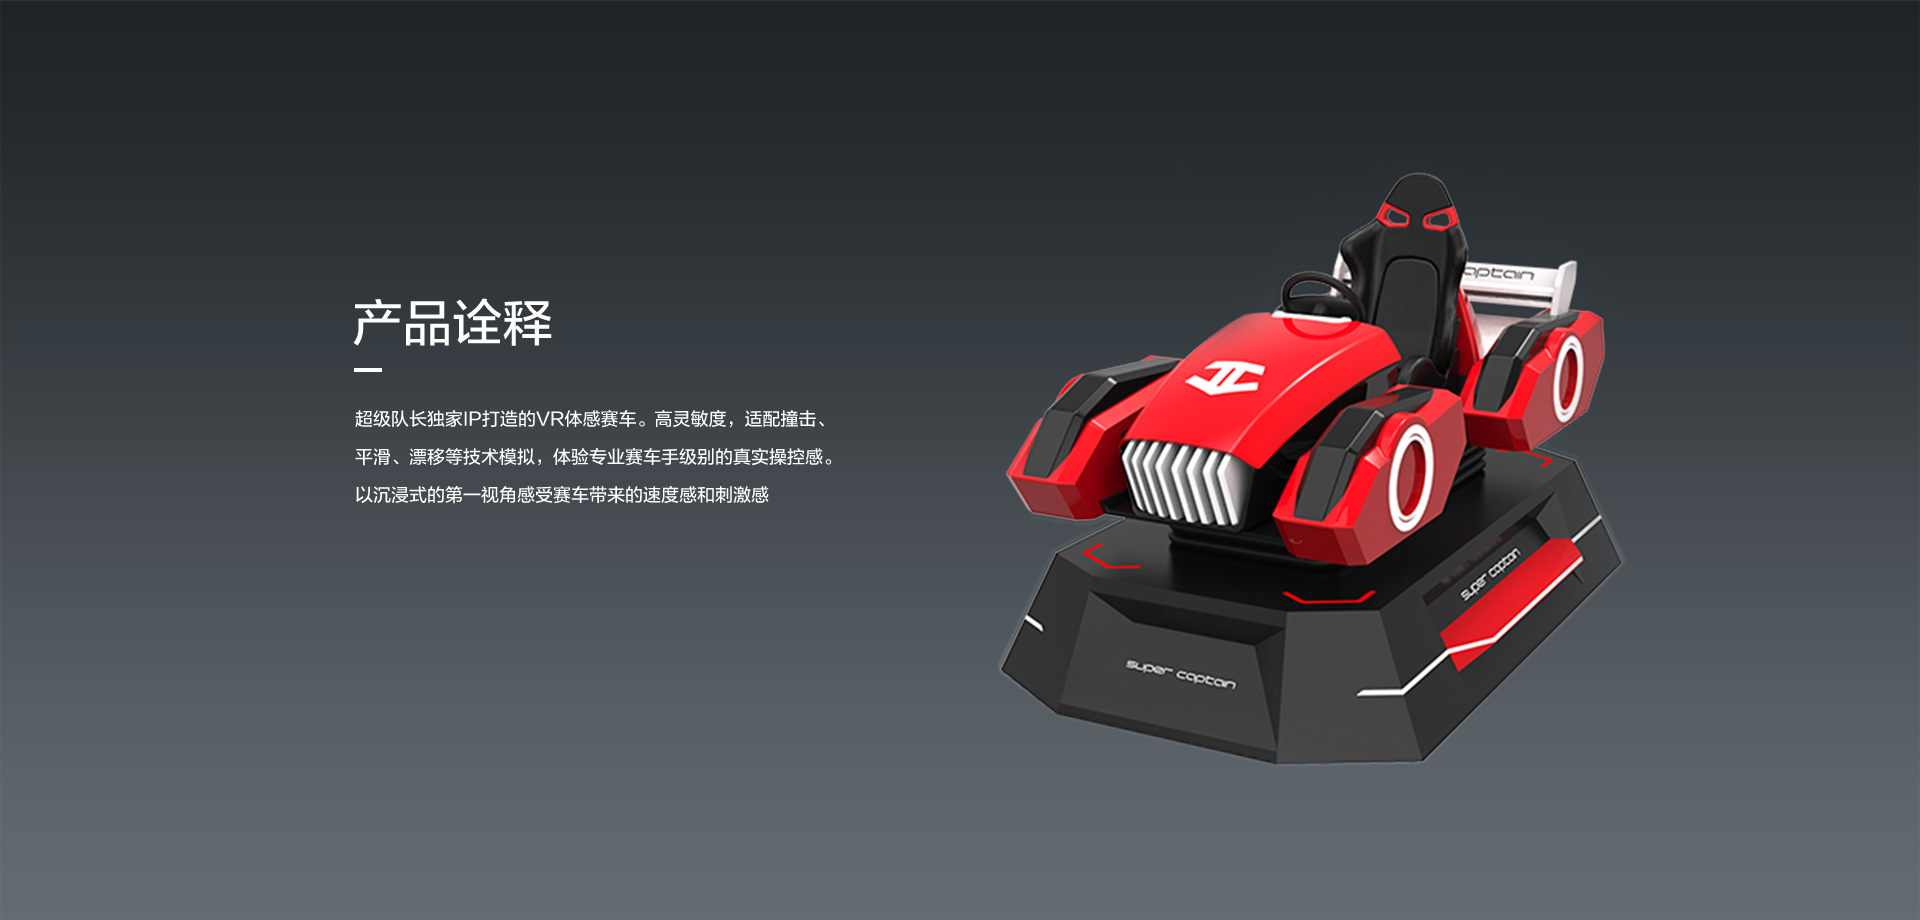 超级队长独家IP打造的VR体感赛车。高灵敏度，适配撞击、 平滑、漂移等技术模拟，体验专业赛车手级别的真实操控感。以沉浸式的第一视角感受赛车带来的速度感和刺激感